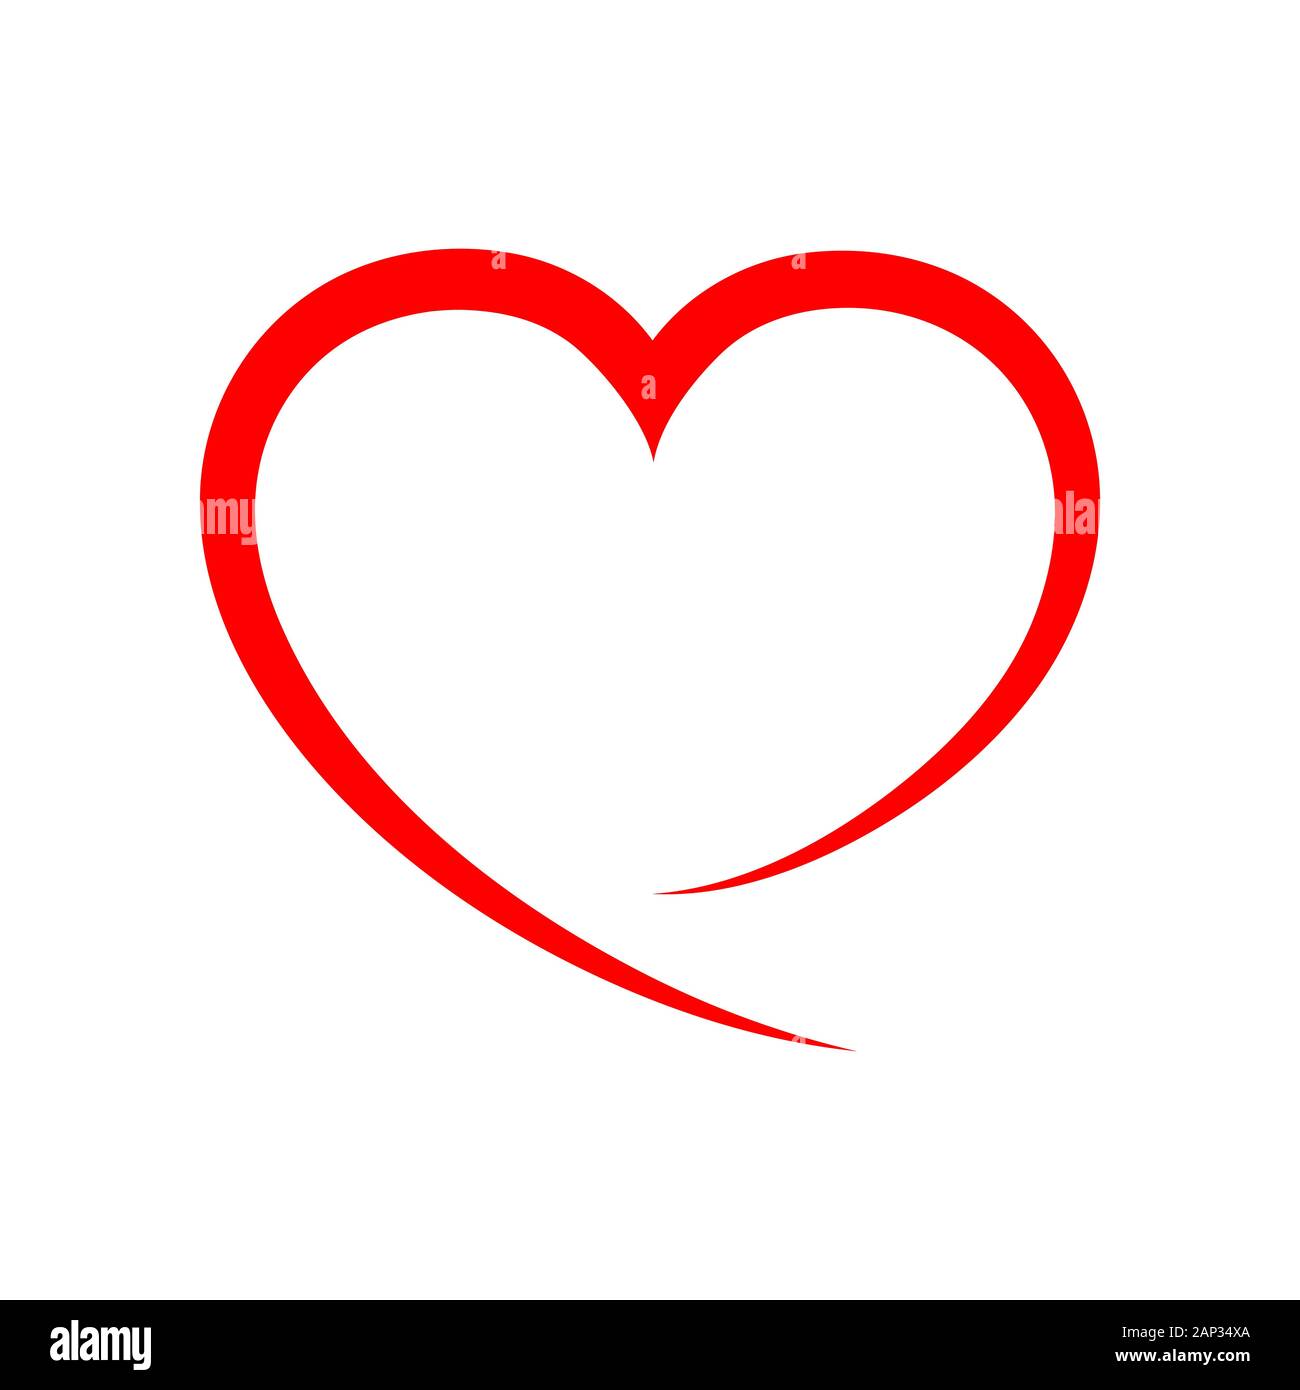 Abstract cuore profilo. Illustrazione Vettoriale. Cuore rosso icona in stile appartamento. Il cuore come simbolo dell'amore. Illustrazione Vettoriale